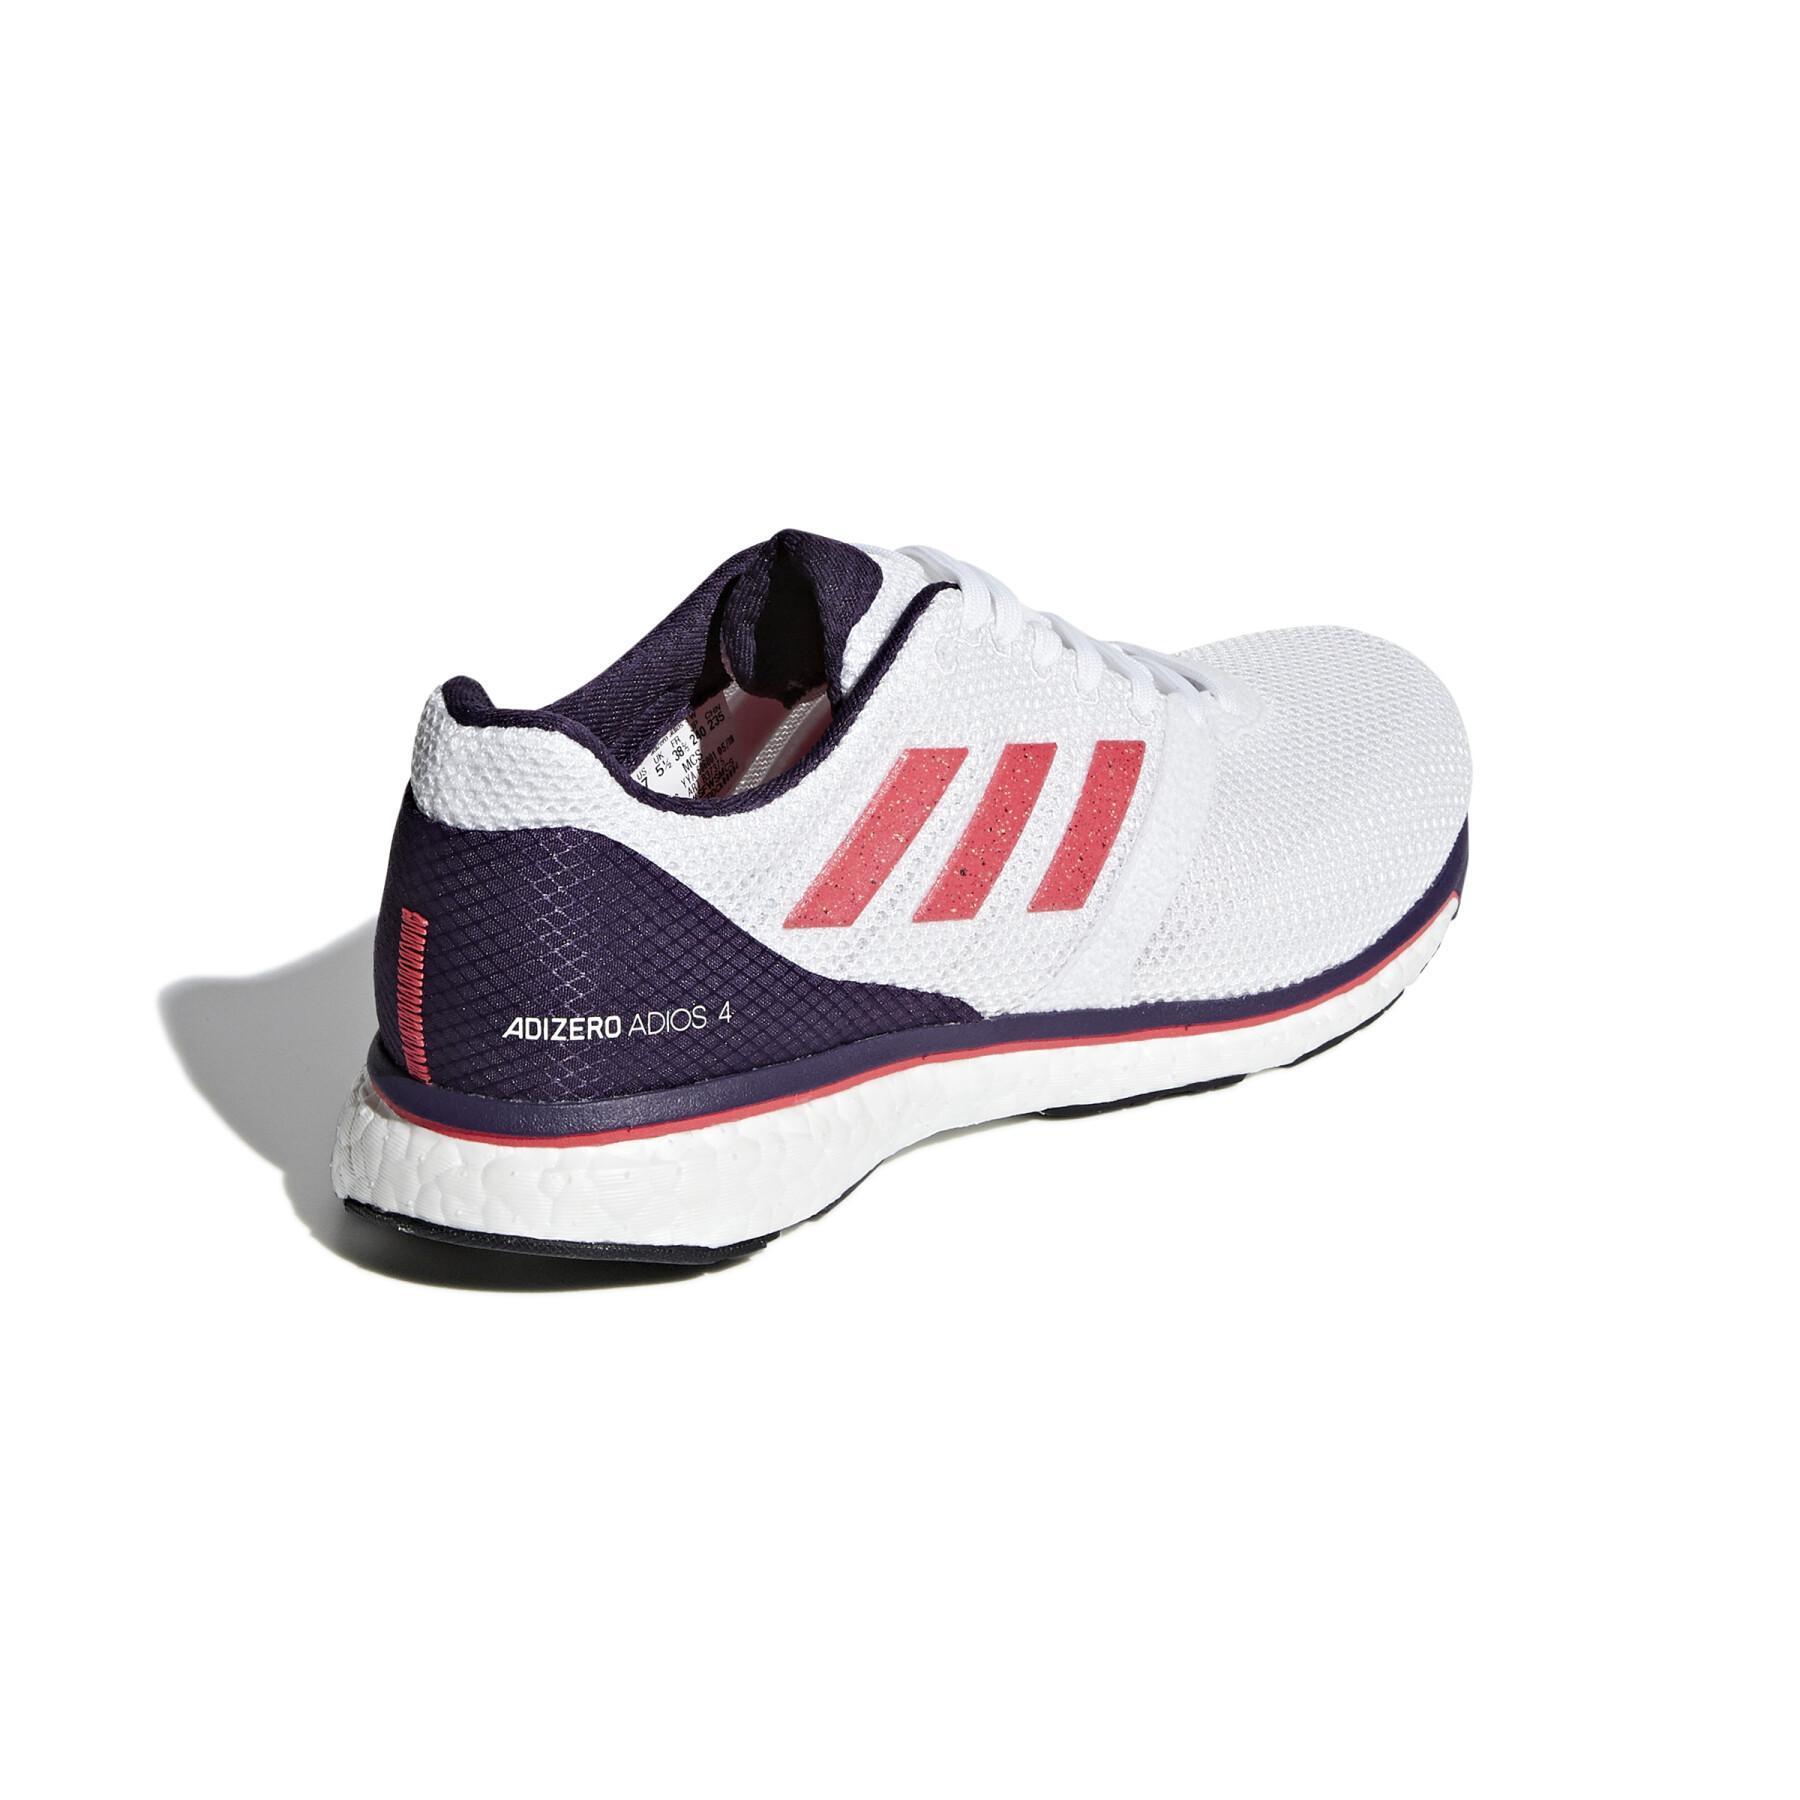 Chaussures de running femme adidas Adizero Adios 4